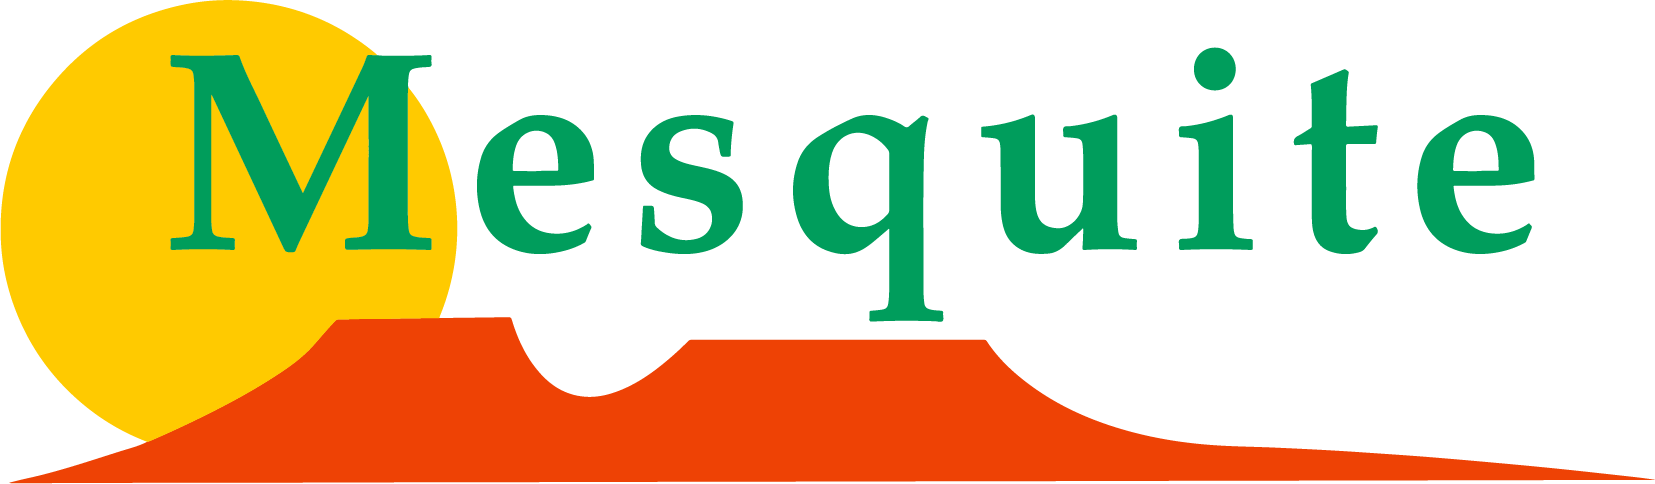 City of Mesquite logo